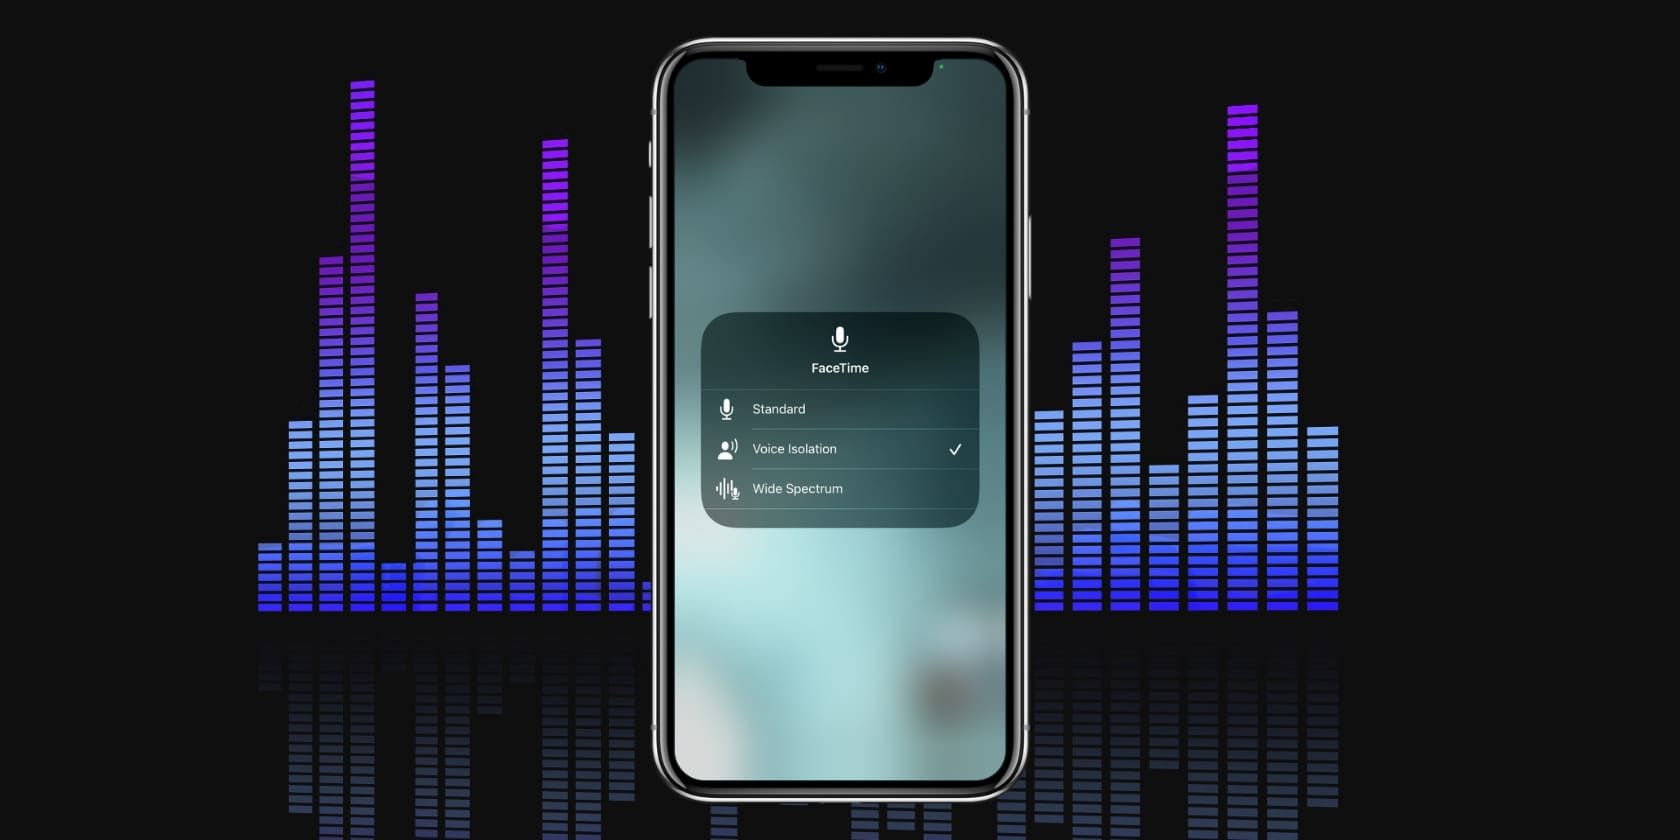 Hãy cùng khám phá ứng dụng iOS 15 mới nhất với tính năng loại bỏ tiếng ồn và cuộc gọi FaceTime không còn bị phản xạ từ phía nền nữa. Hãy tưởng tượng, bạn sẽ có thể tập trung hoàn toàn vào hội thoại và không bị phân tâm bởi tiếng ồn xung quanh hay hình ảnh nền đầy phiền toái. Nhấn vào hình ảnh để trải nghiệm. 